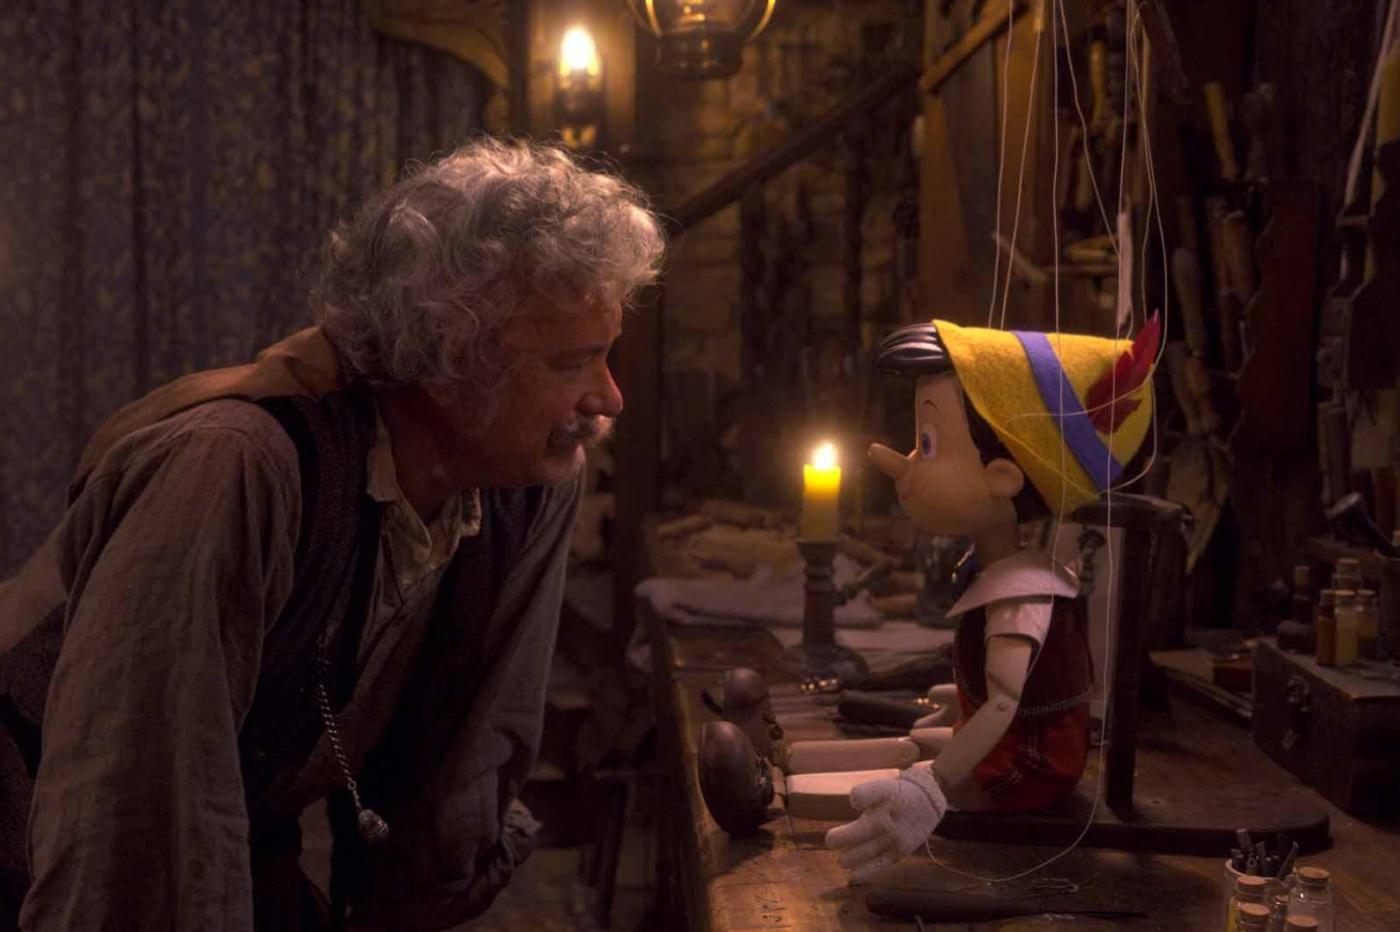 Capture d'écran du film Pinocchio avec Tom Hanks en Gepetto qui se tient devant le petit pantin de bois